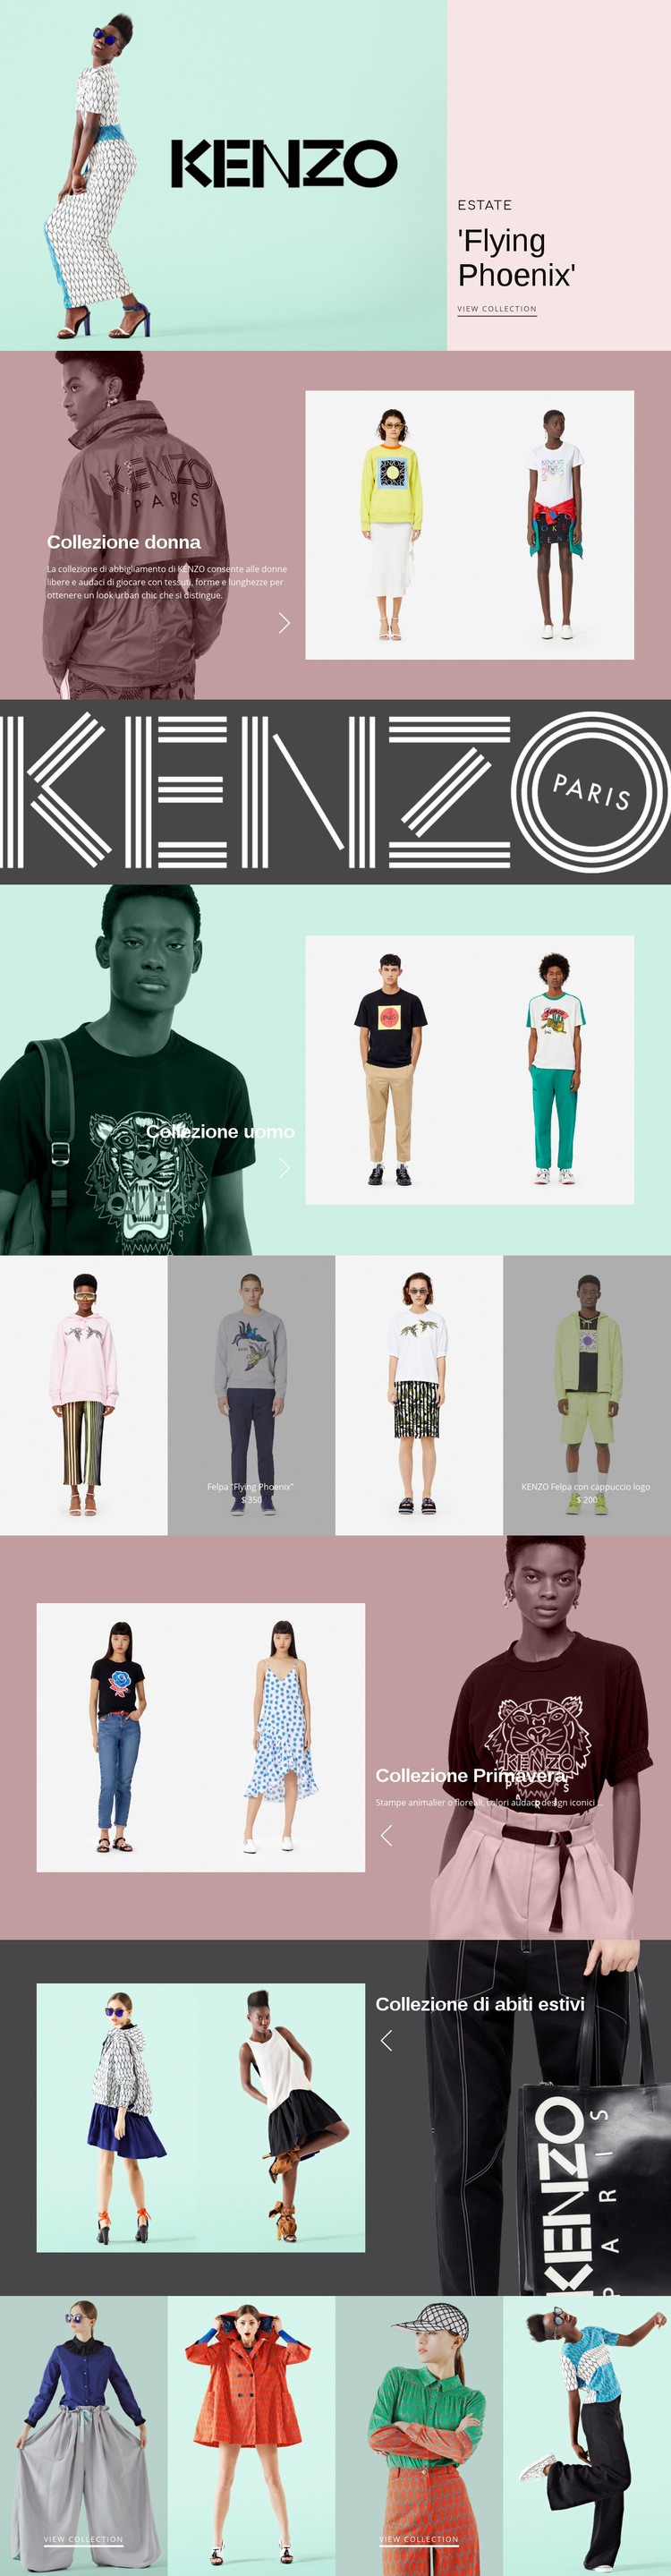 Atelier di moda moderna Costruttore di siti web HTML